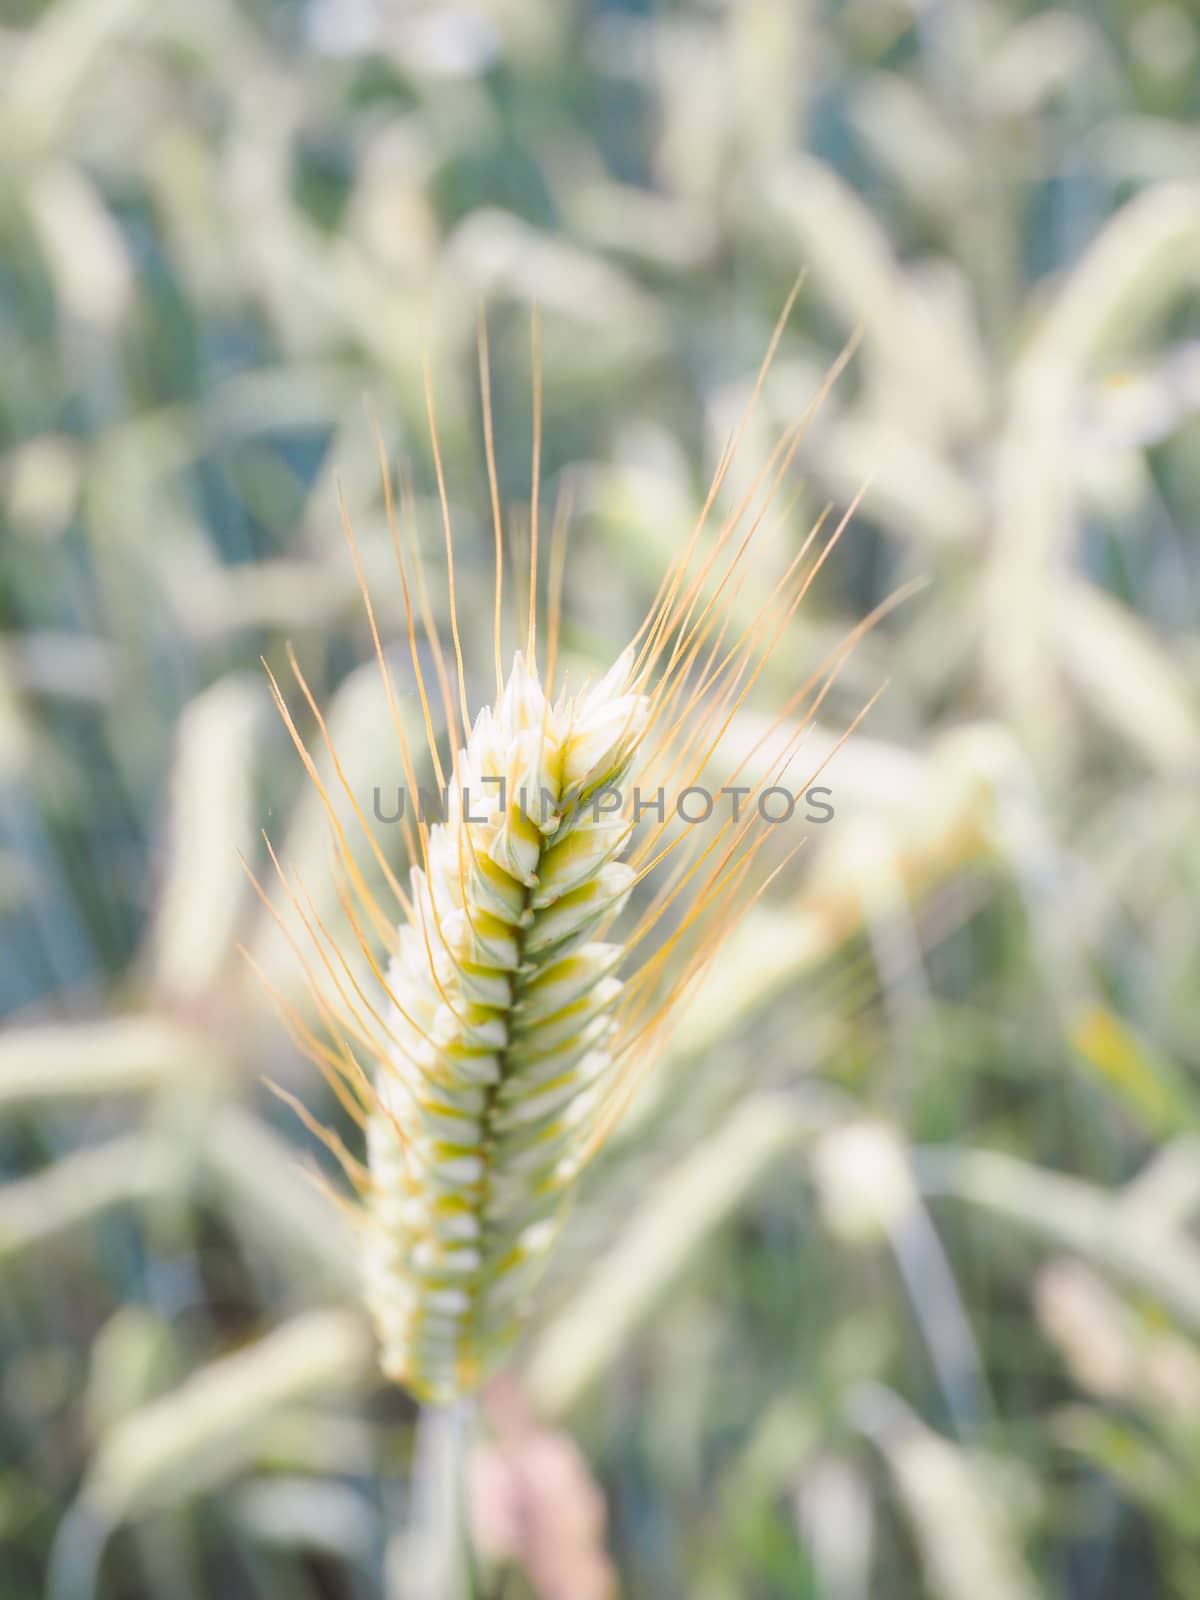 Whole green barley grain in a field